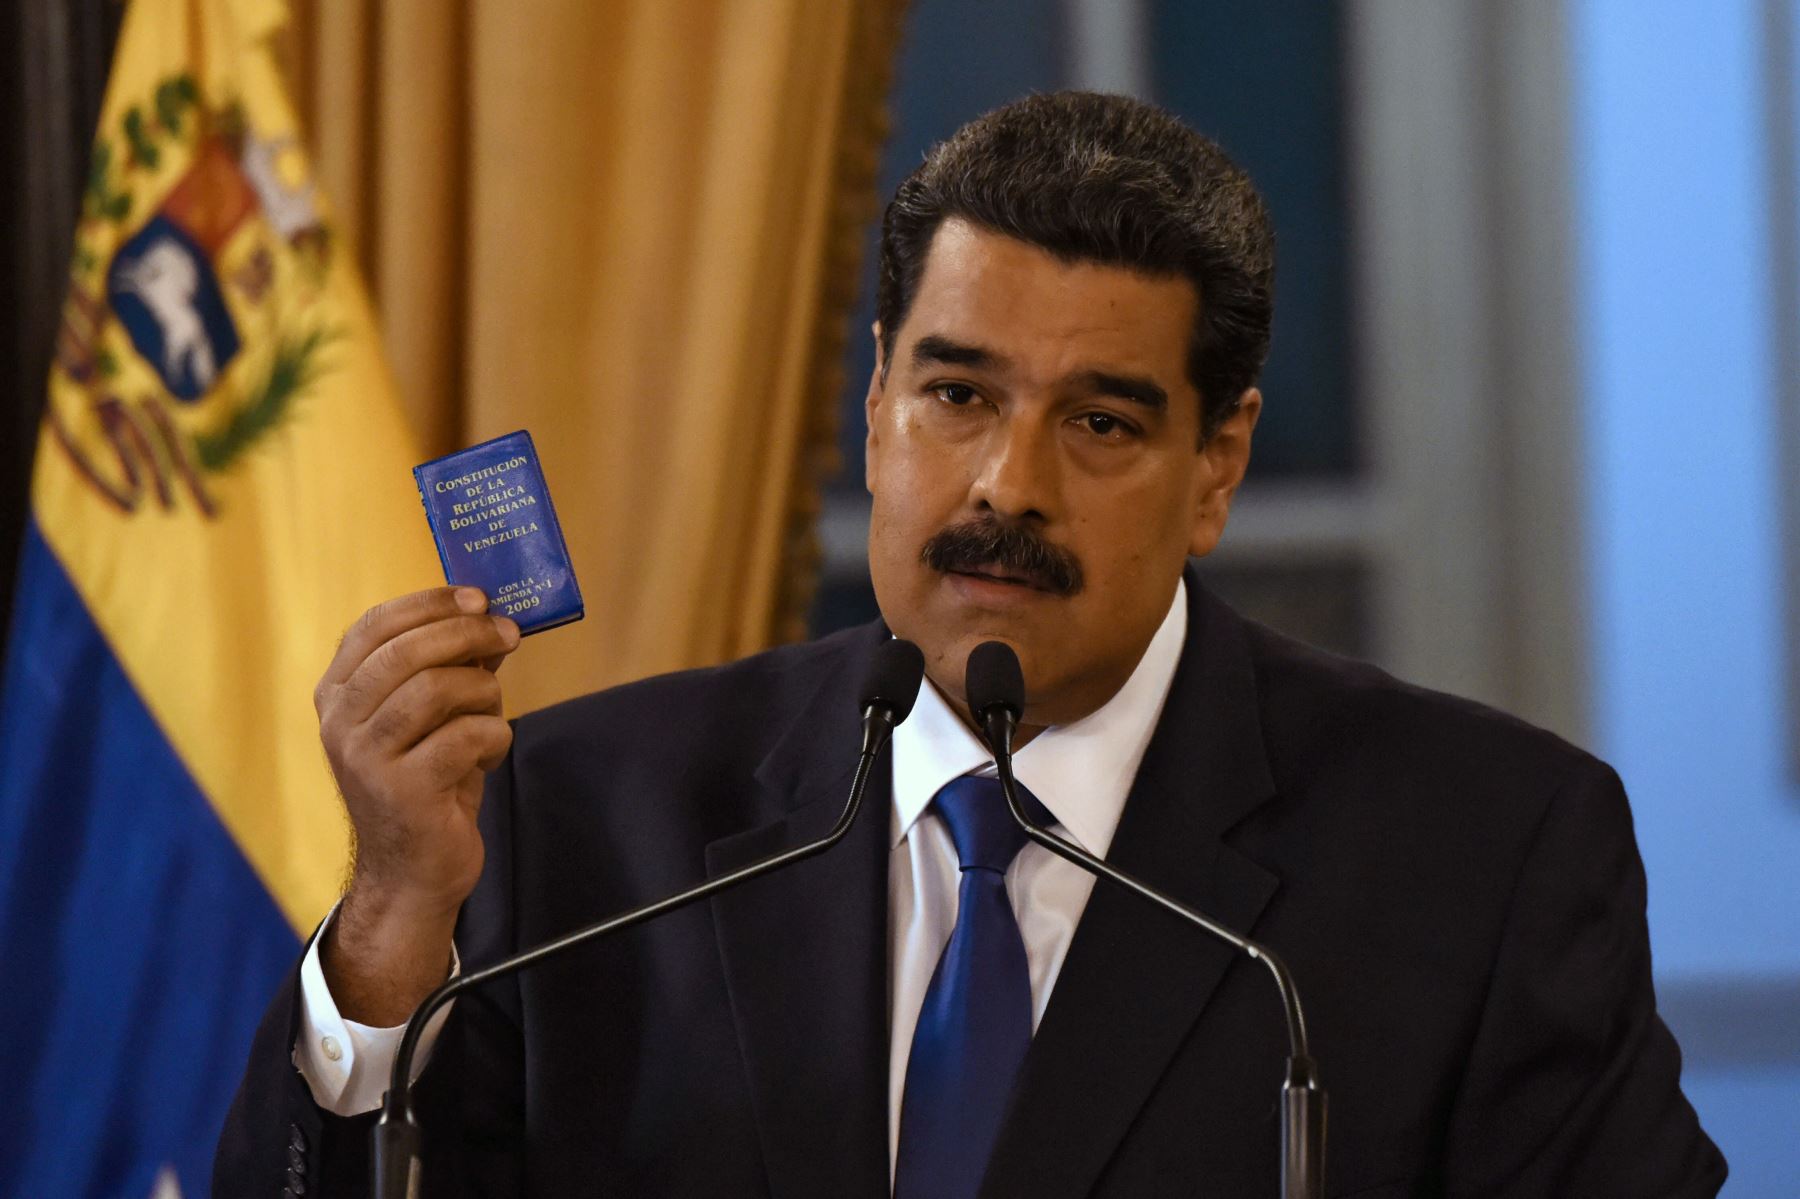 El presidente venezolano, Nicolás Maduro, pronunció un discurso en Caracas el 8 de febrero de 2018 Foto: AFP